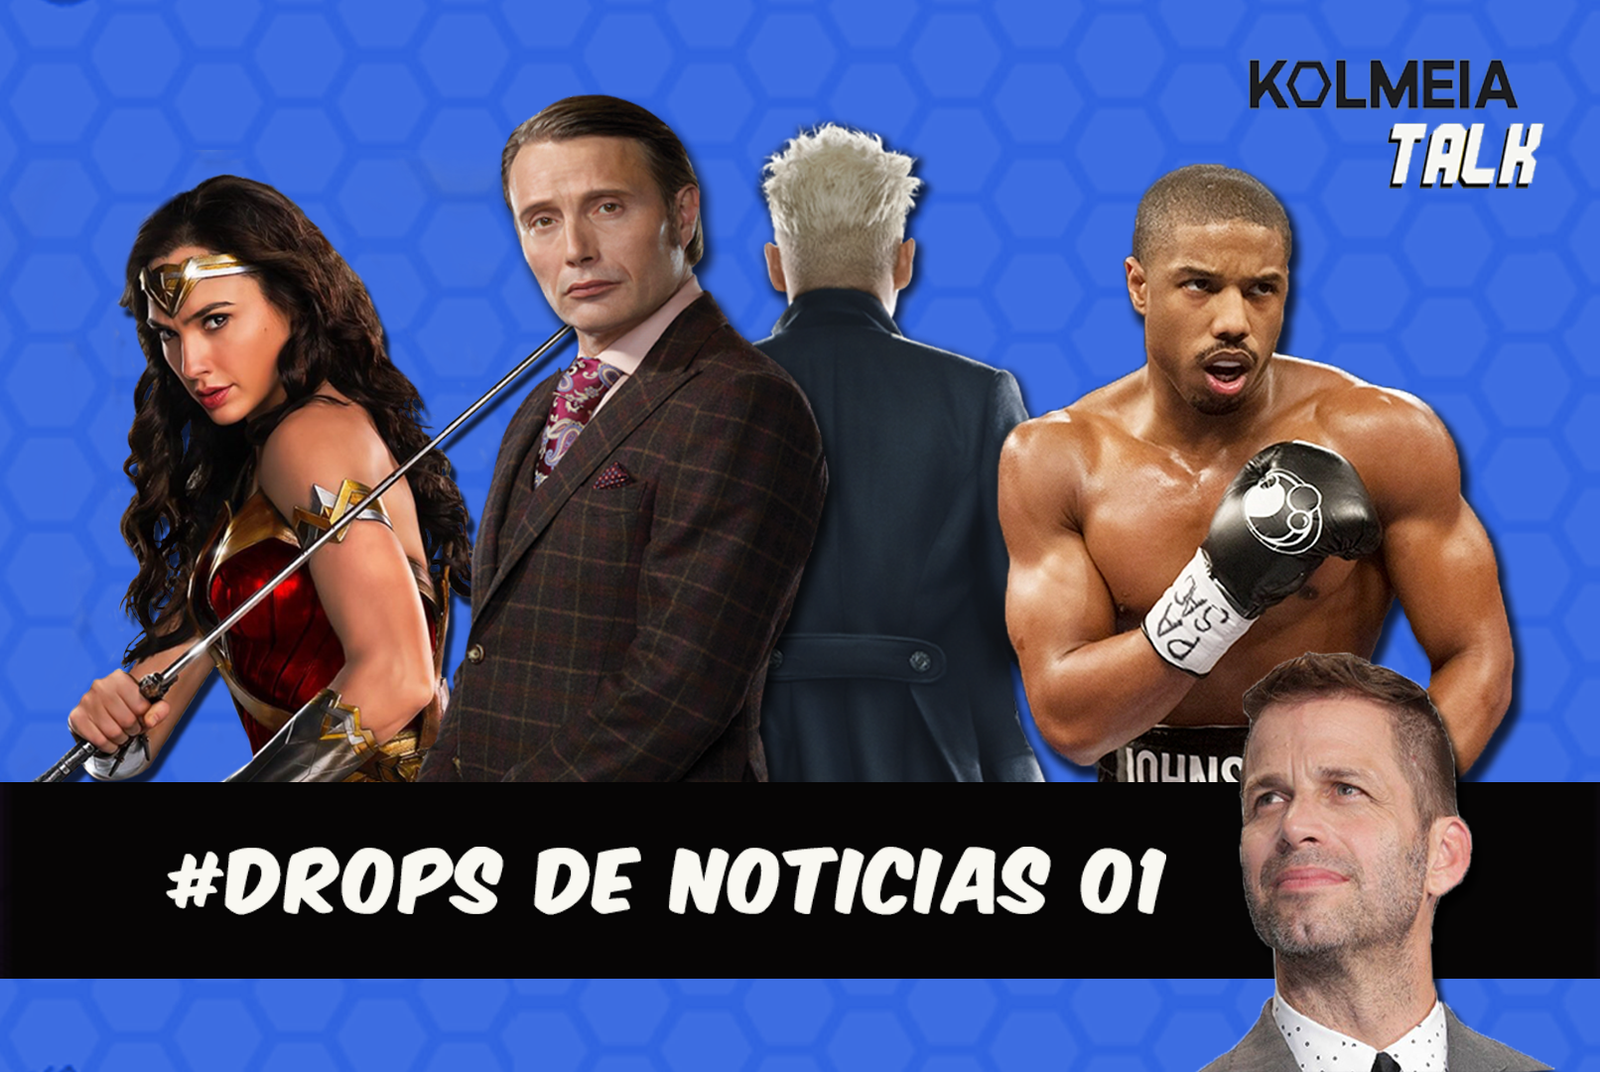 Bônus #01 Drops de Notícias! | Kolmeia Talk podcast